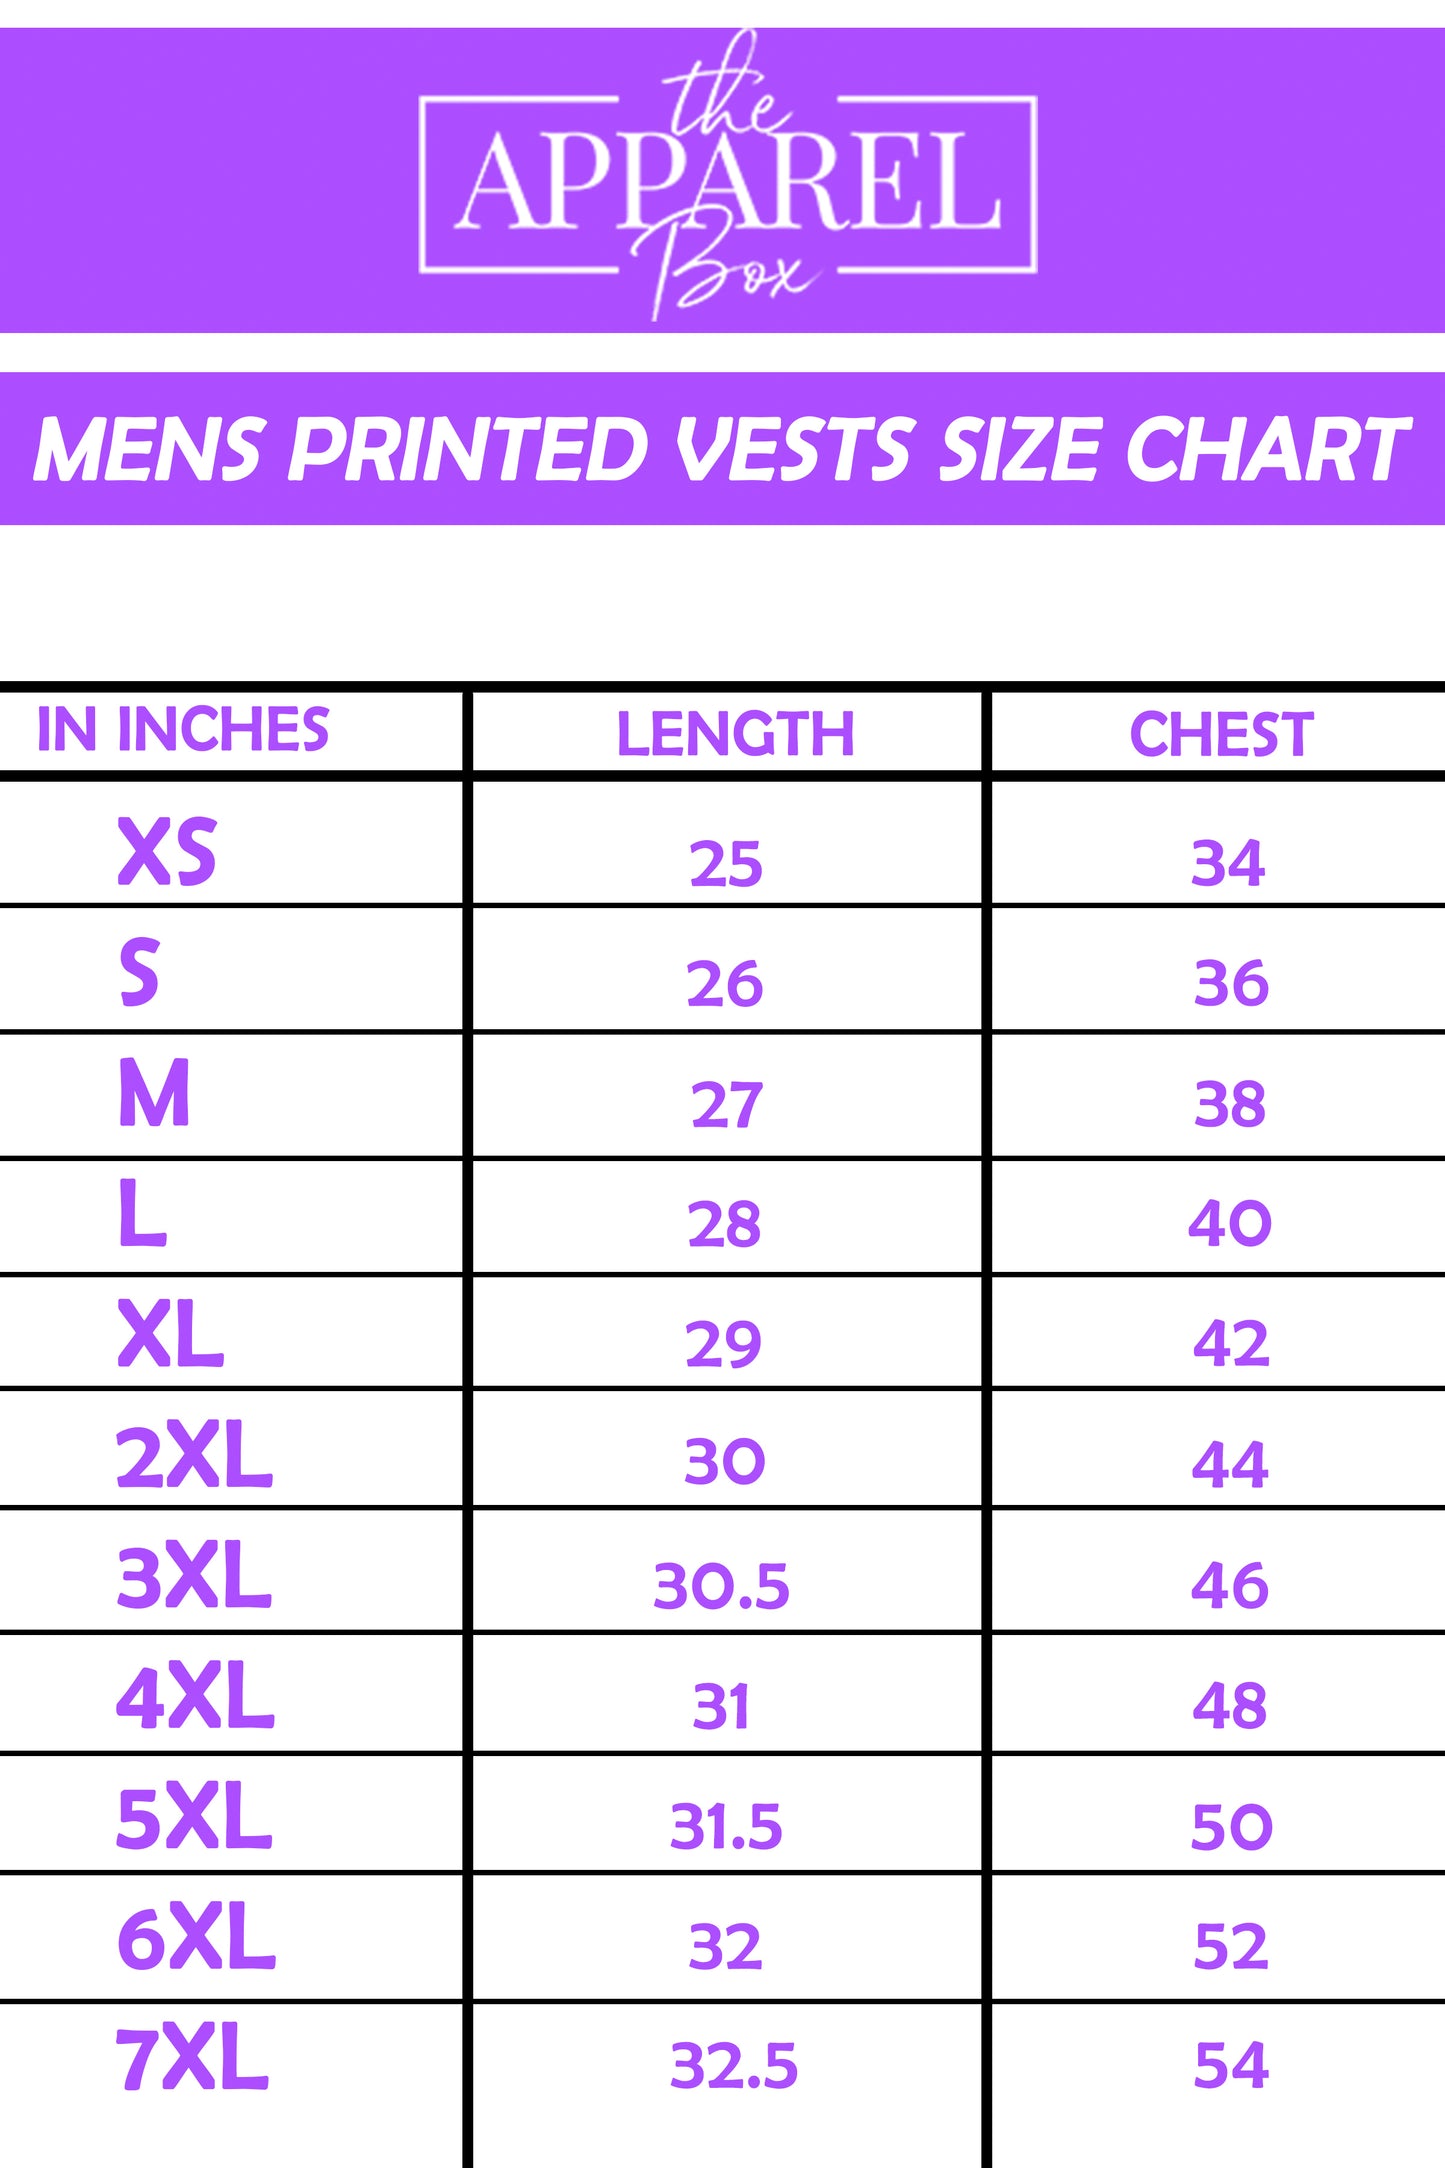 Printed Vest#32